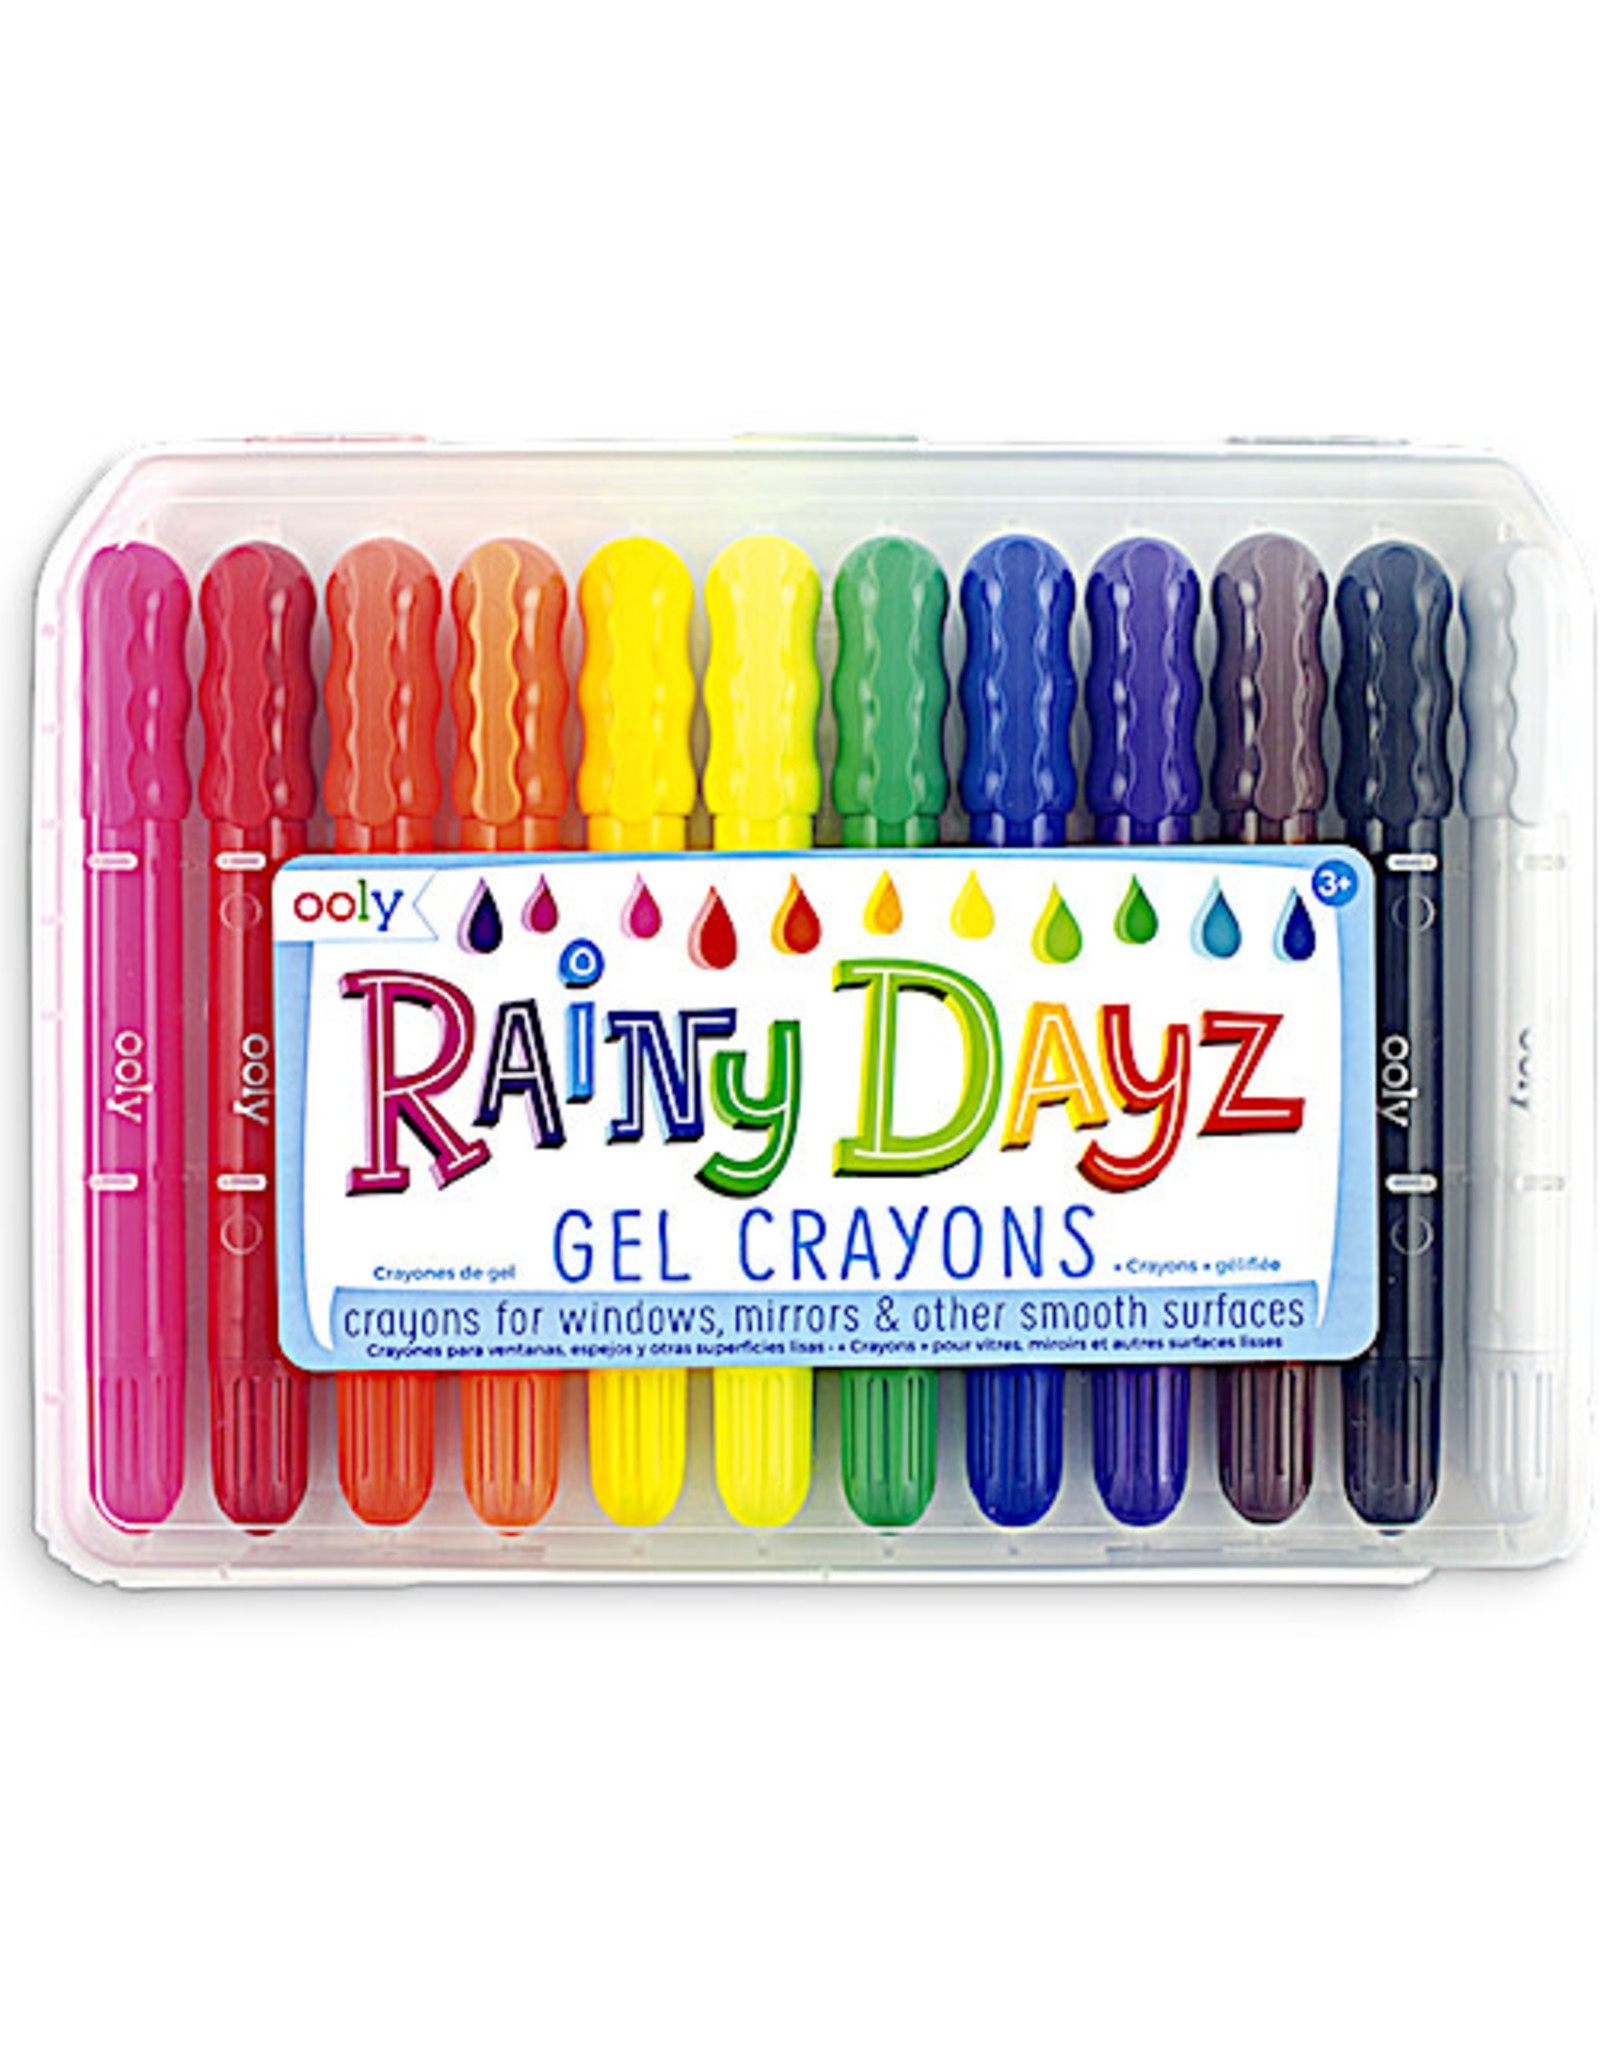 Ooly Rainy Dayz Gel Crayons - Set of 12